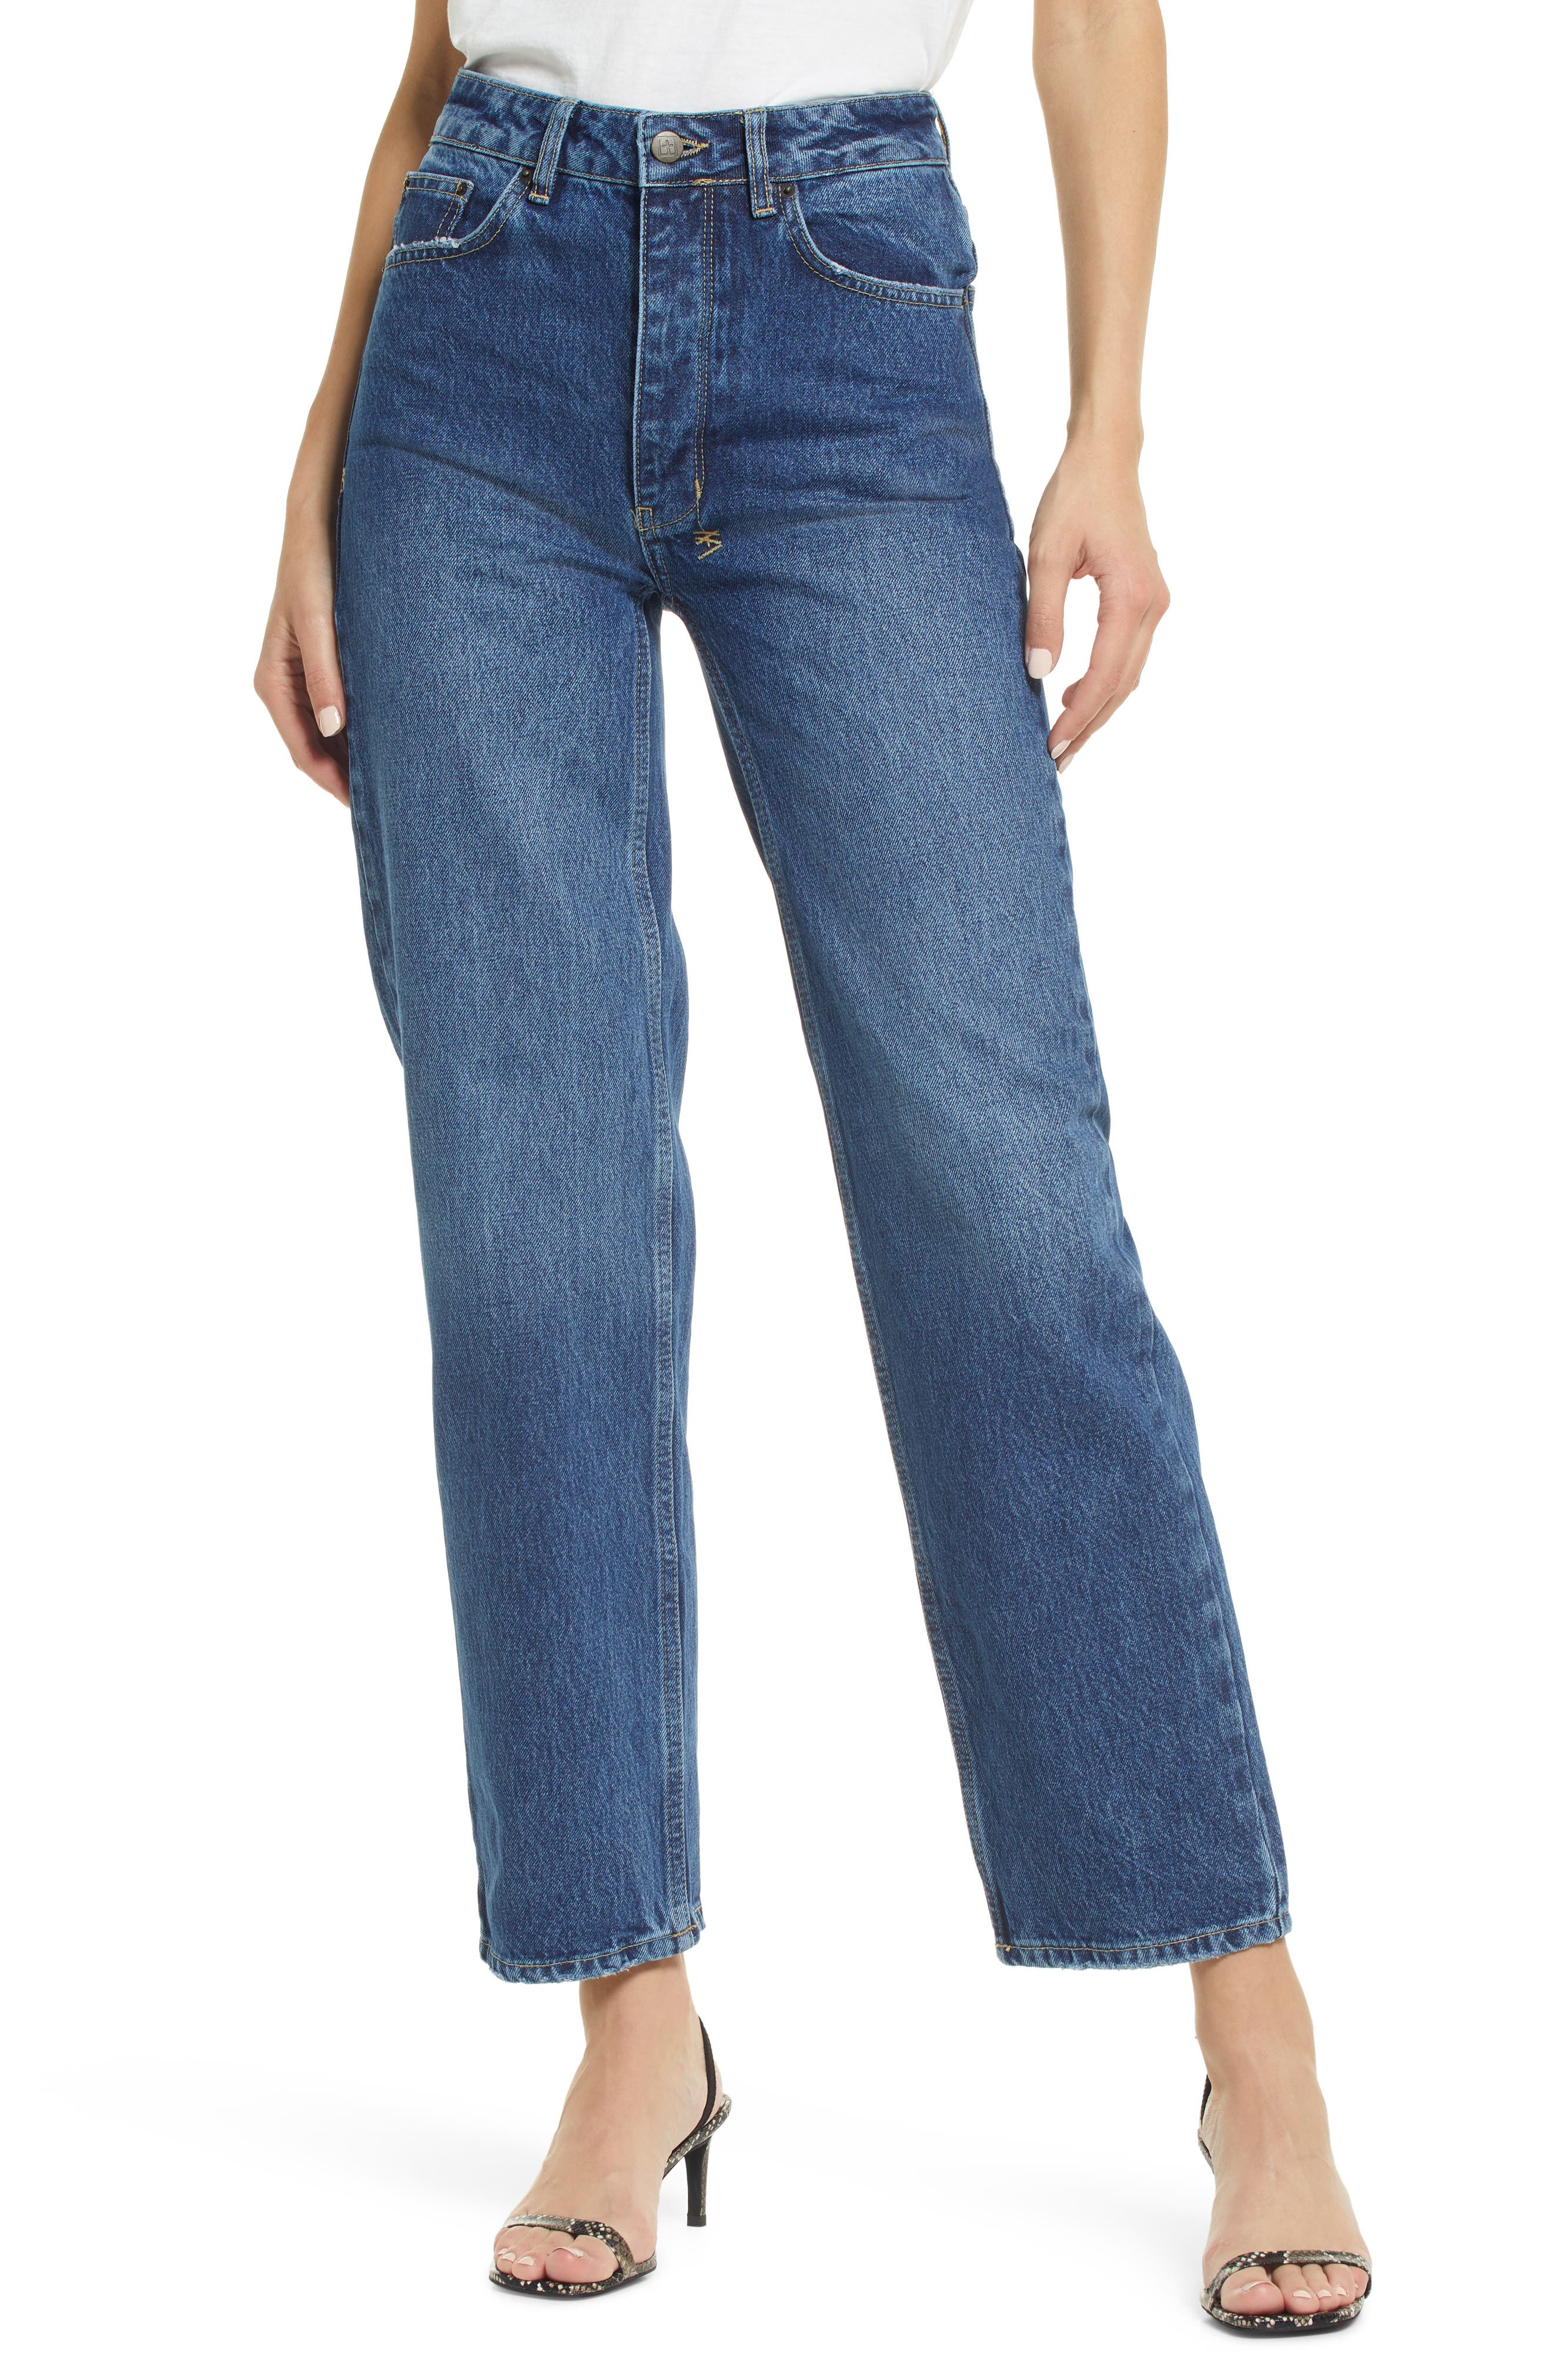 Ksubi Brooklyn Stella Straight Leg Jeans in Denim at Nordstrom, Size 32